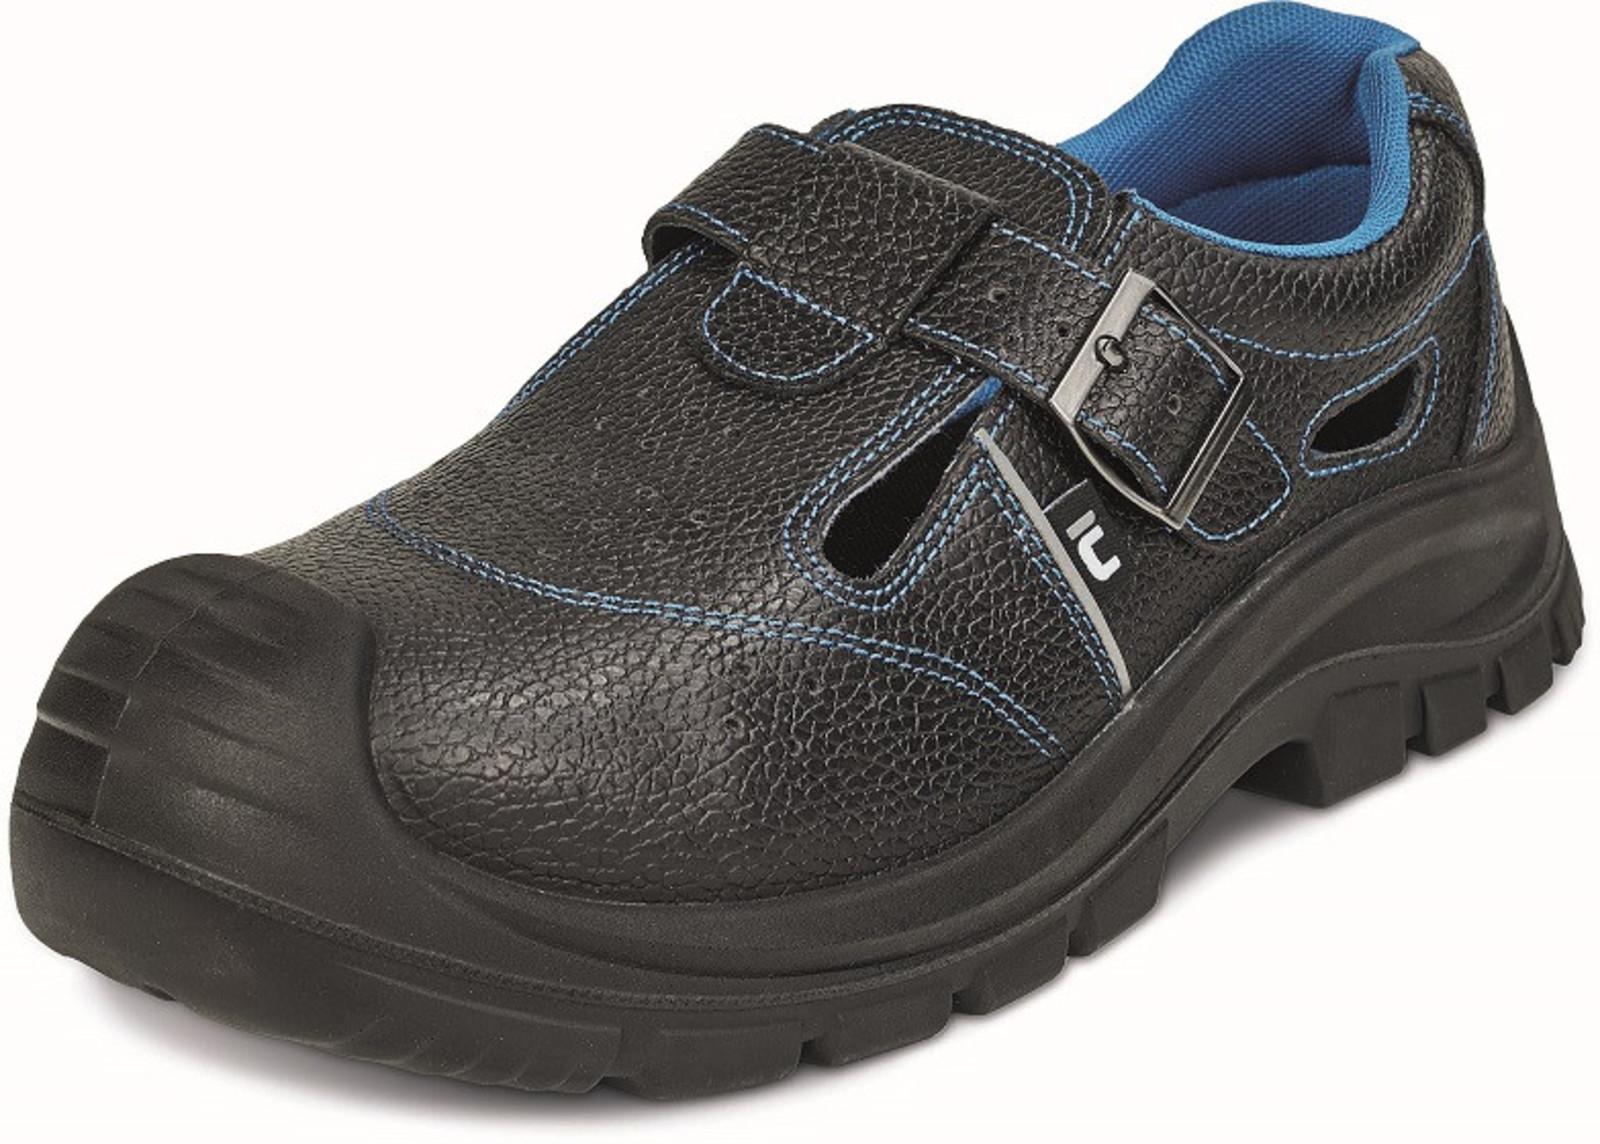 Bezpečnostné sandále Raven XT S1 SRC - veľkosť: 40, farba: čierna